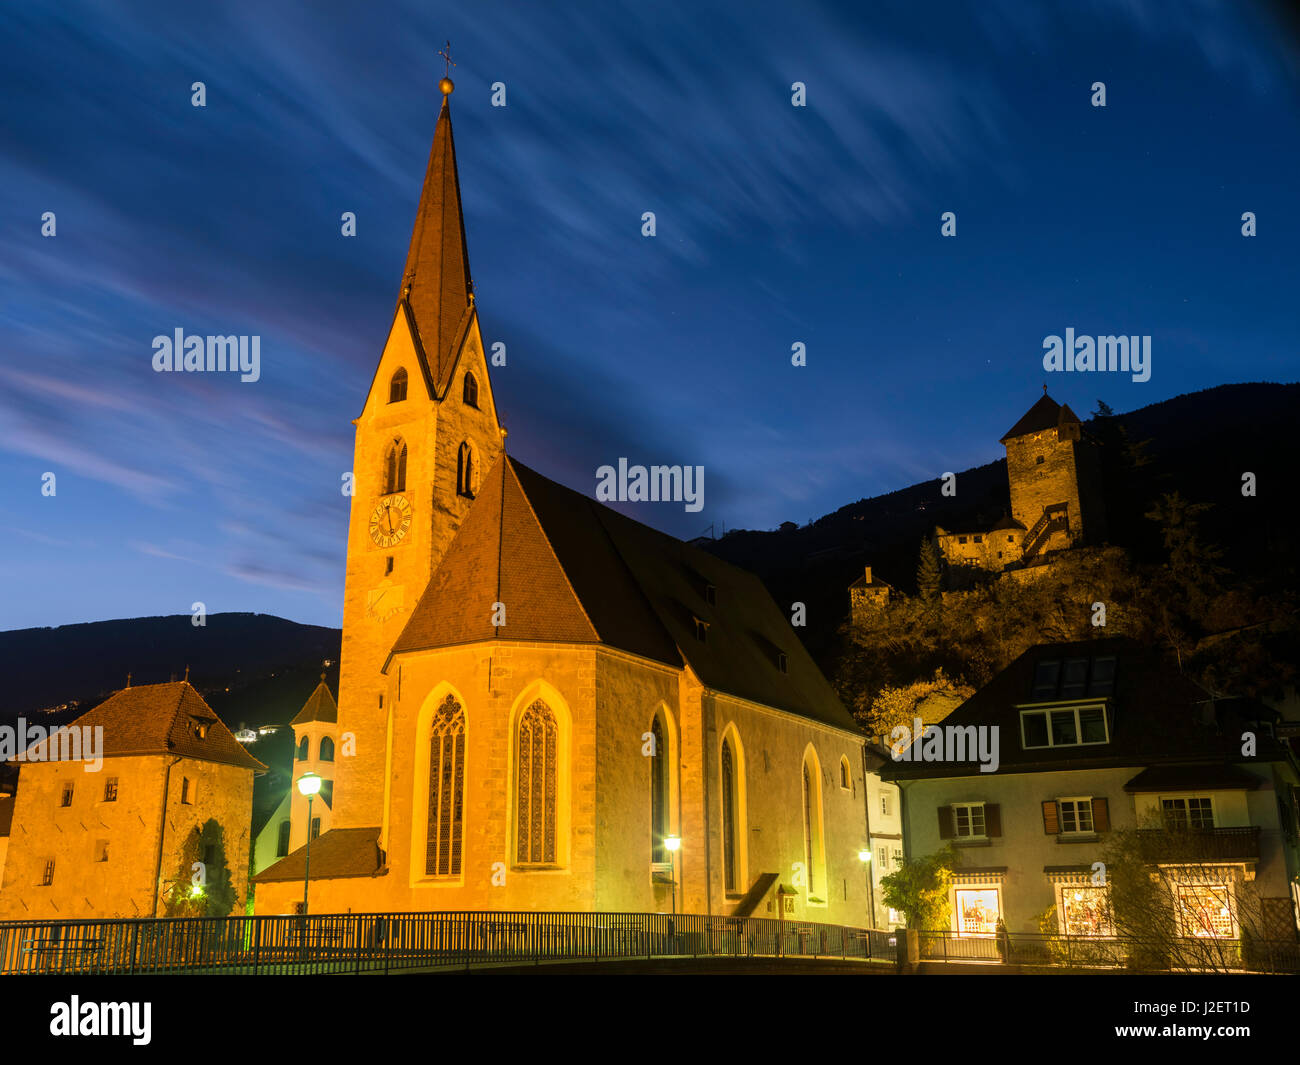 Klausen (Chiusa), la vieille ville et l'église hall dans l'Alsace au cours de l'automne. Château d'arrière-plan. Branzoll L'Europe centrale, le Tyrol du Sud, Italie (grand format formats disponibles) Banque D'Images